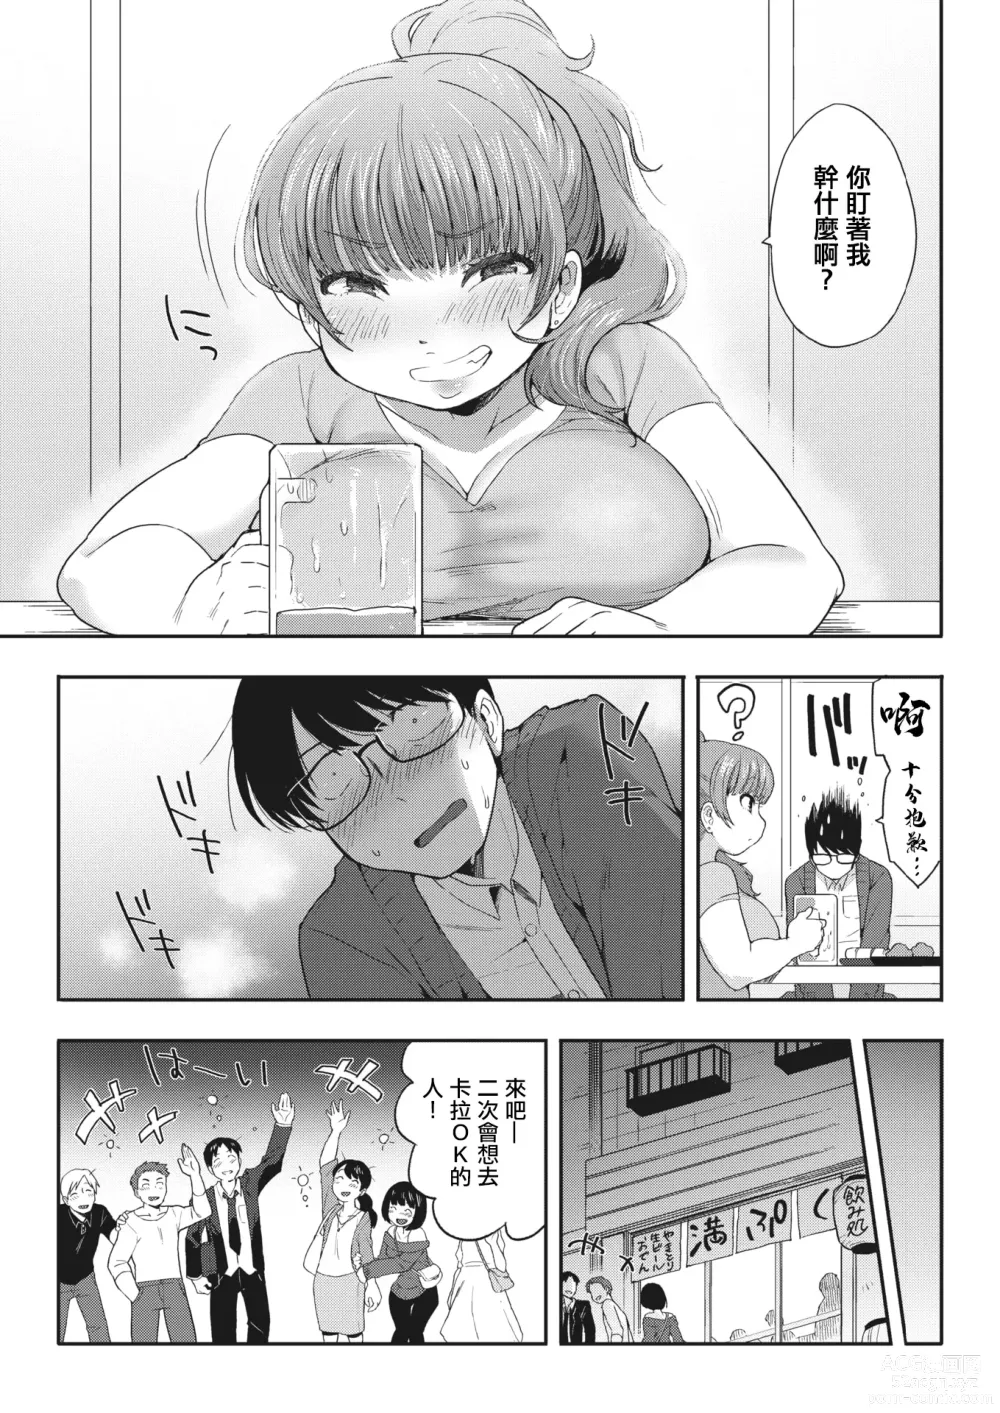 Page 6 of manga 接下來去第二家店